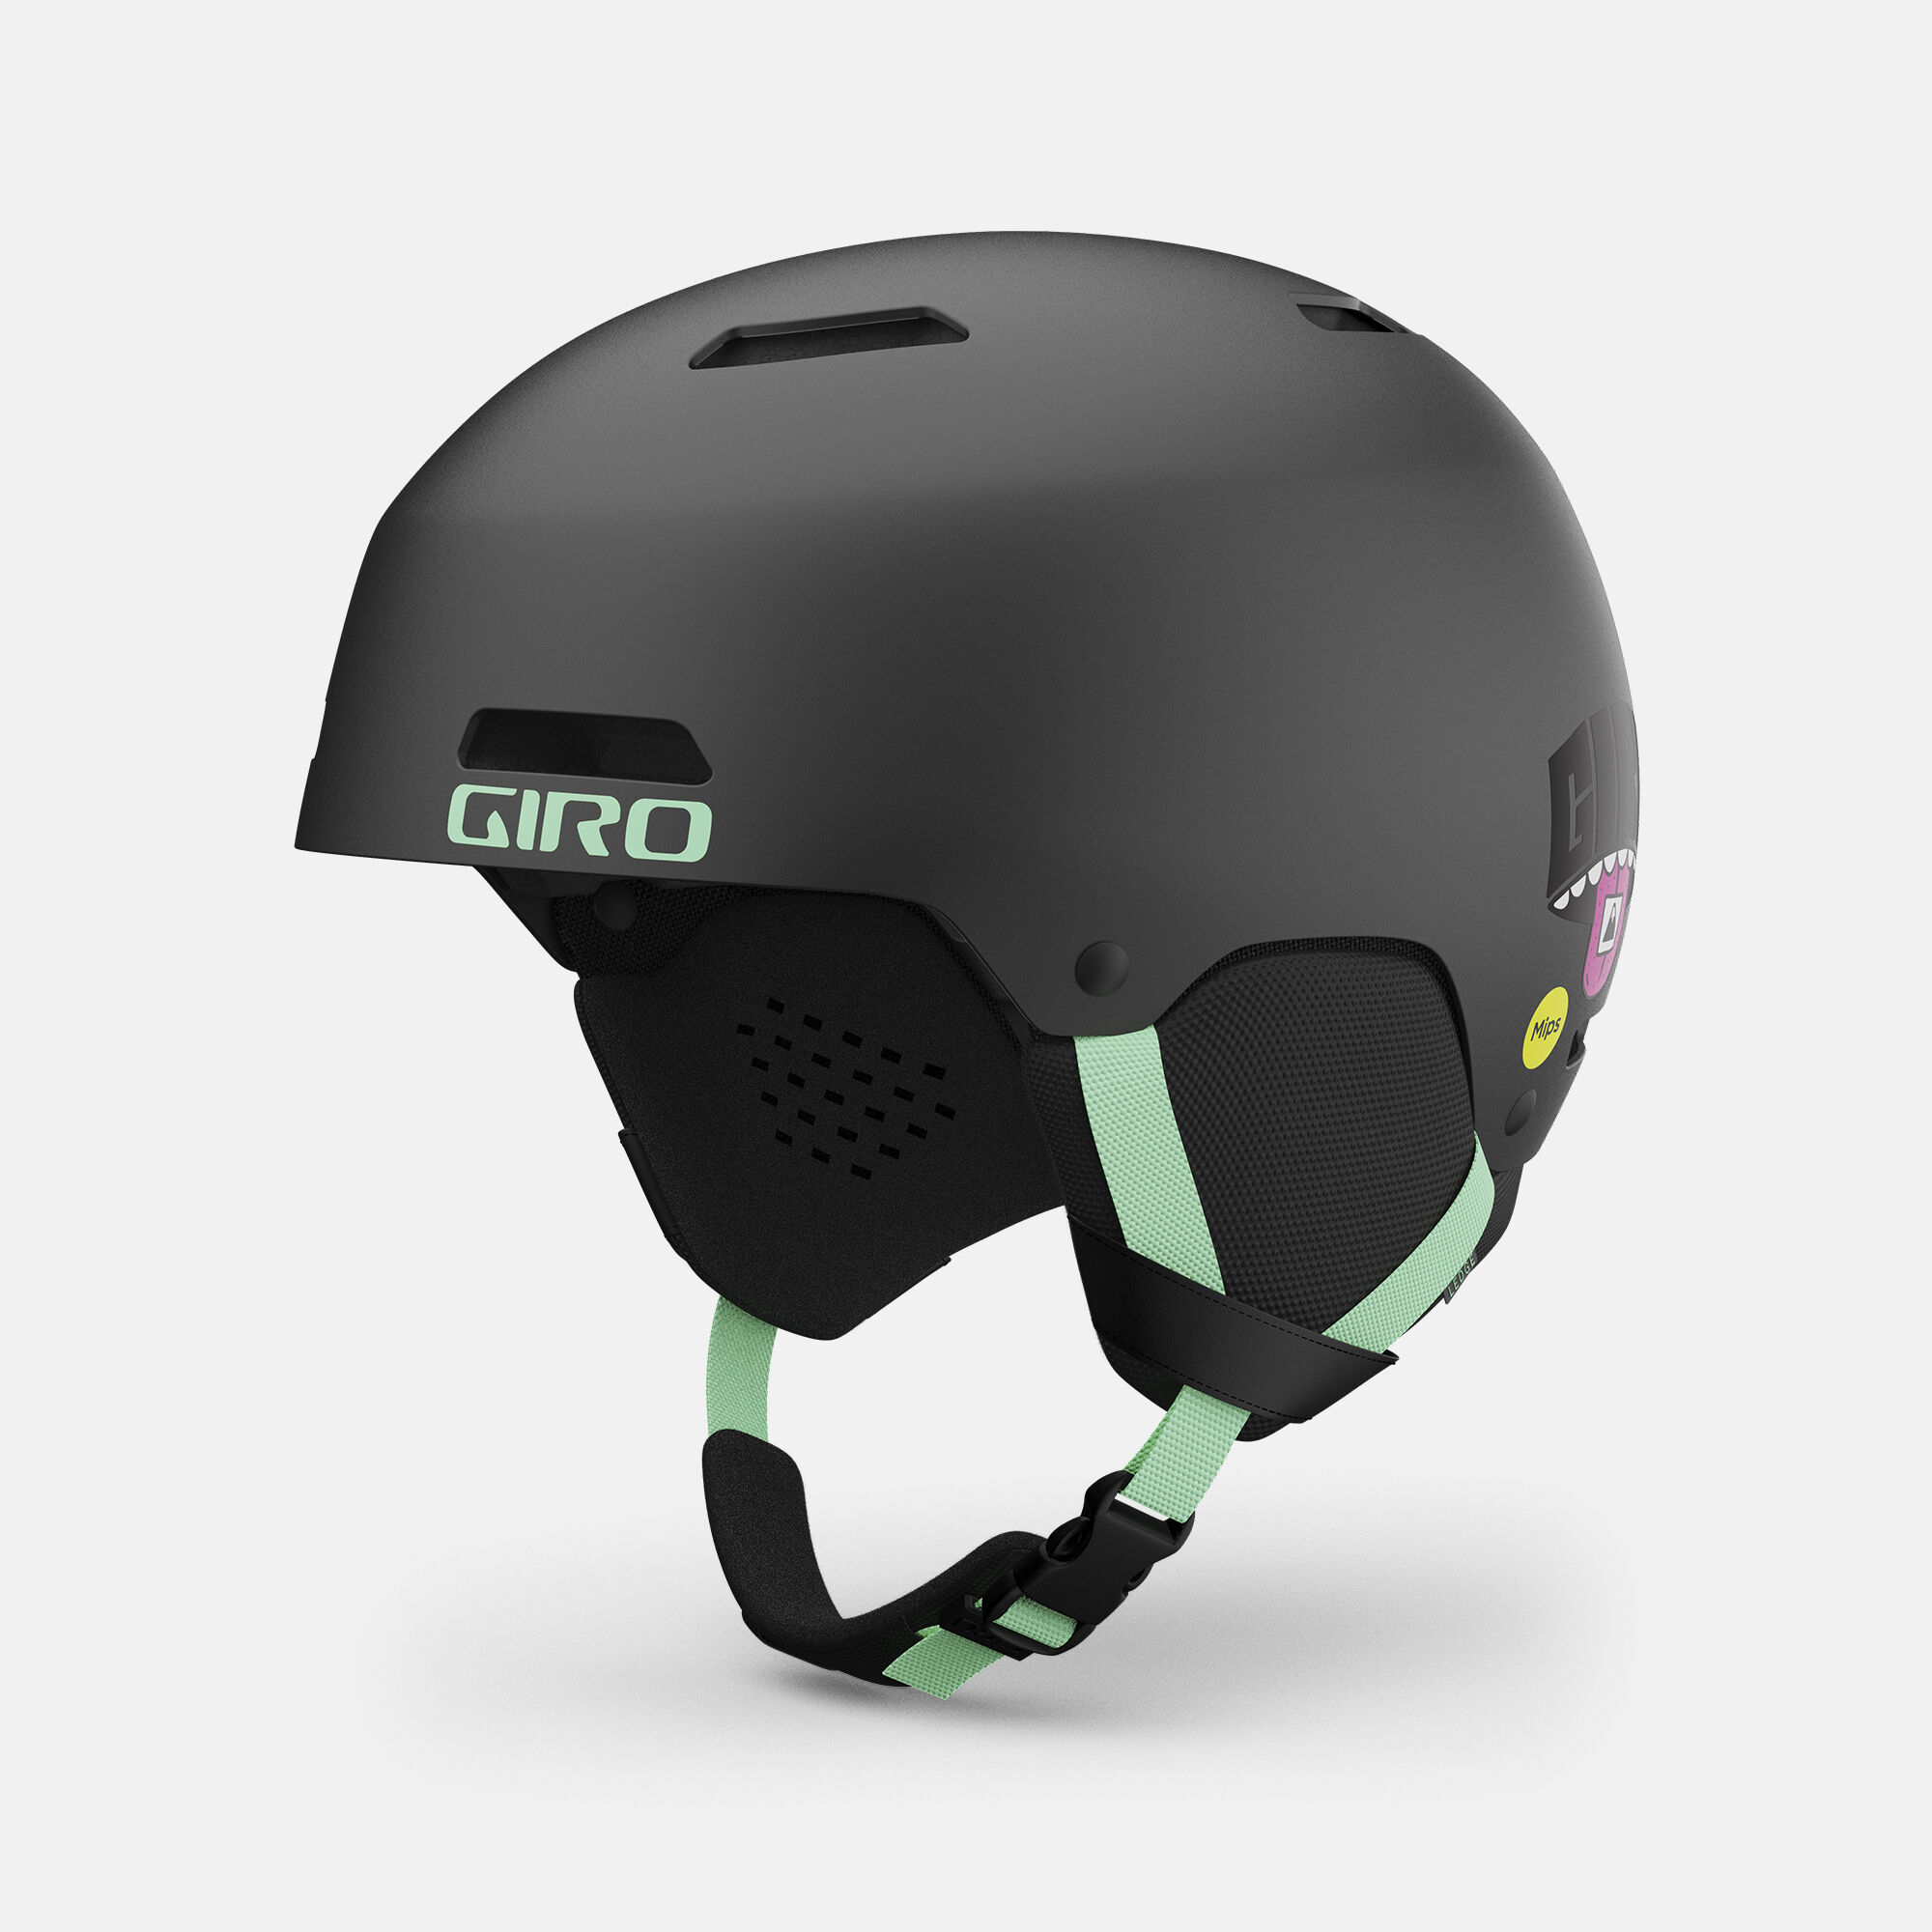 Great Price NEW! Great Design Giro Ledge MIPS Snow Helmet 